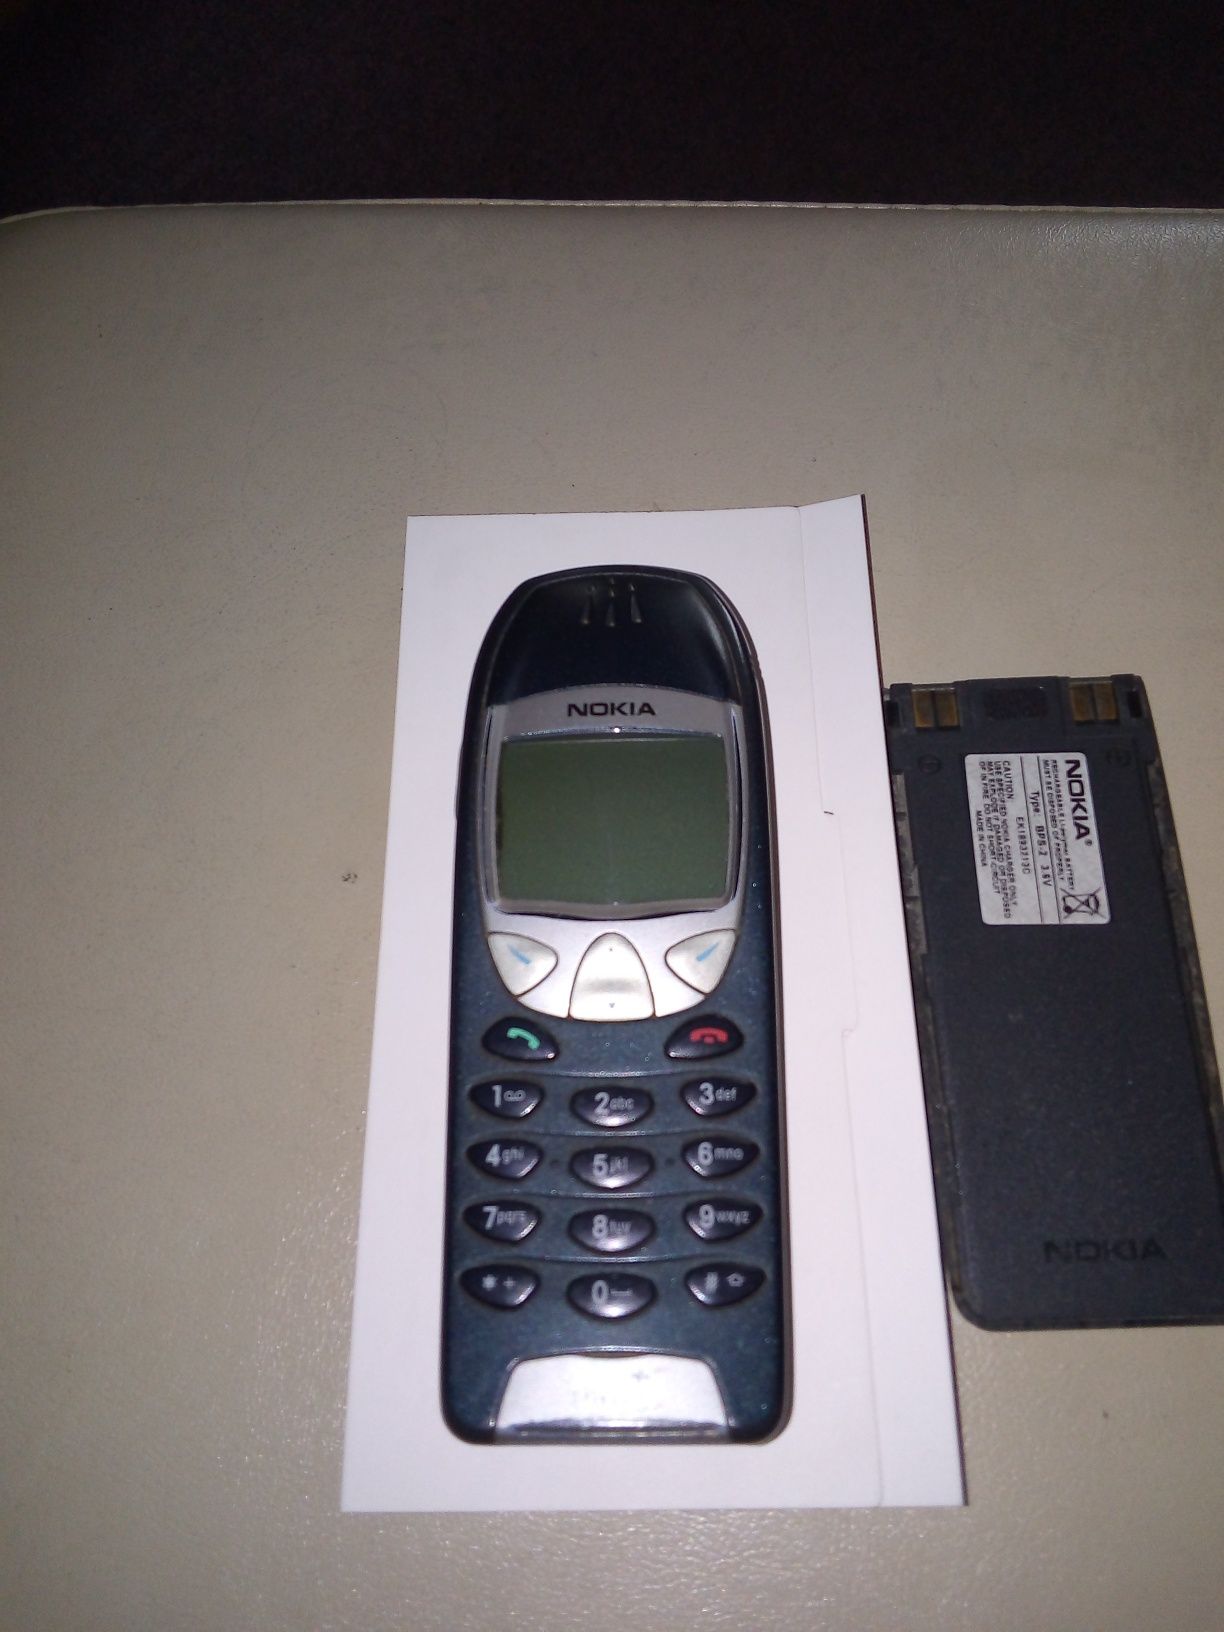 Nokia 6210 stan idealny jak na swoje lata